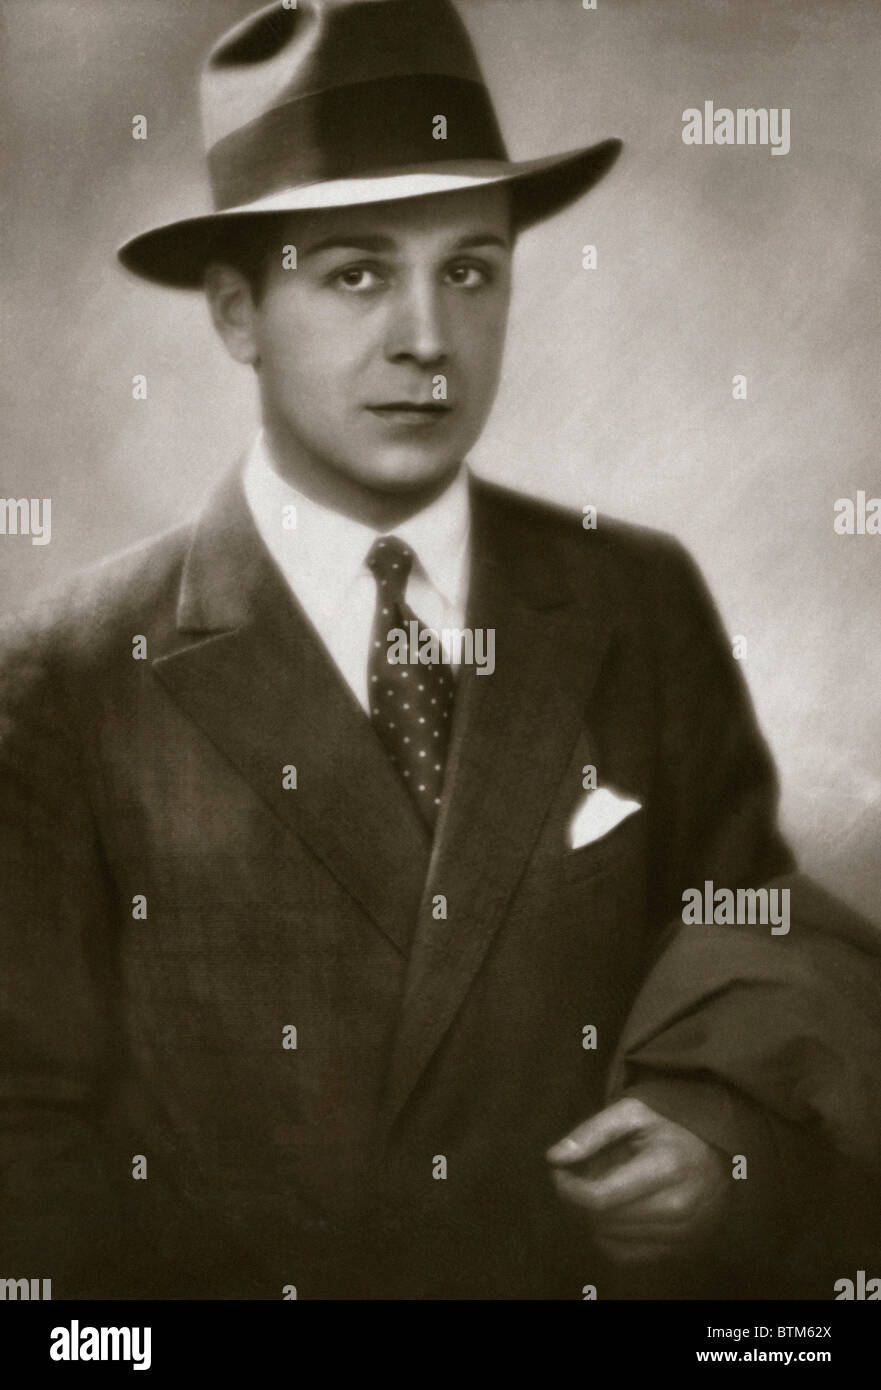 Foto histórica (1910) de un hombre con un sombrero Fotografía de stock -  Alamy